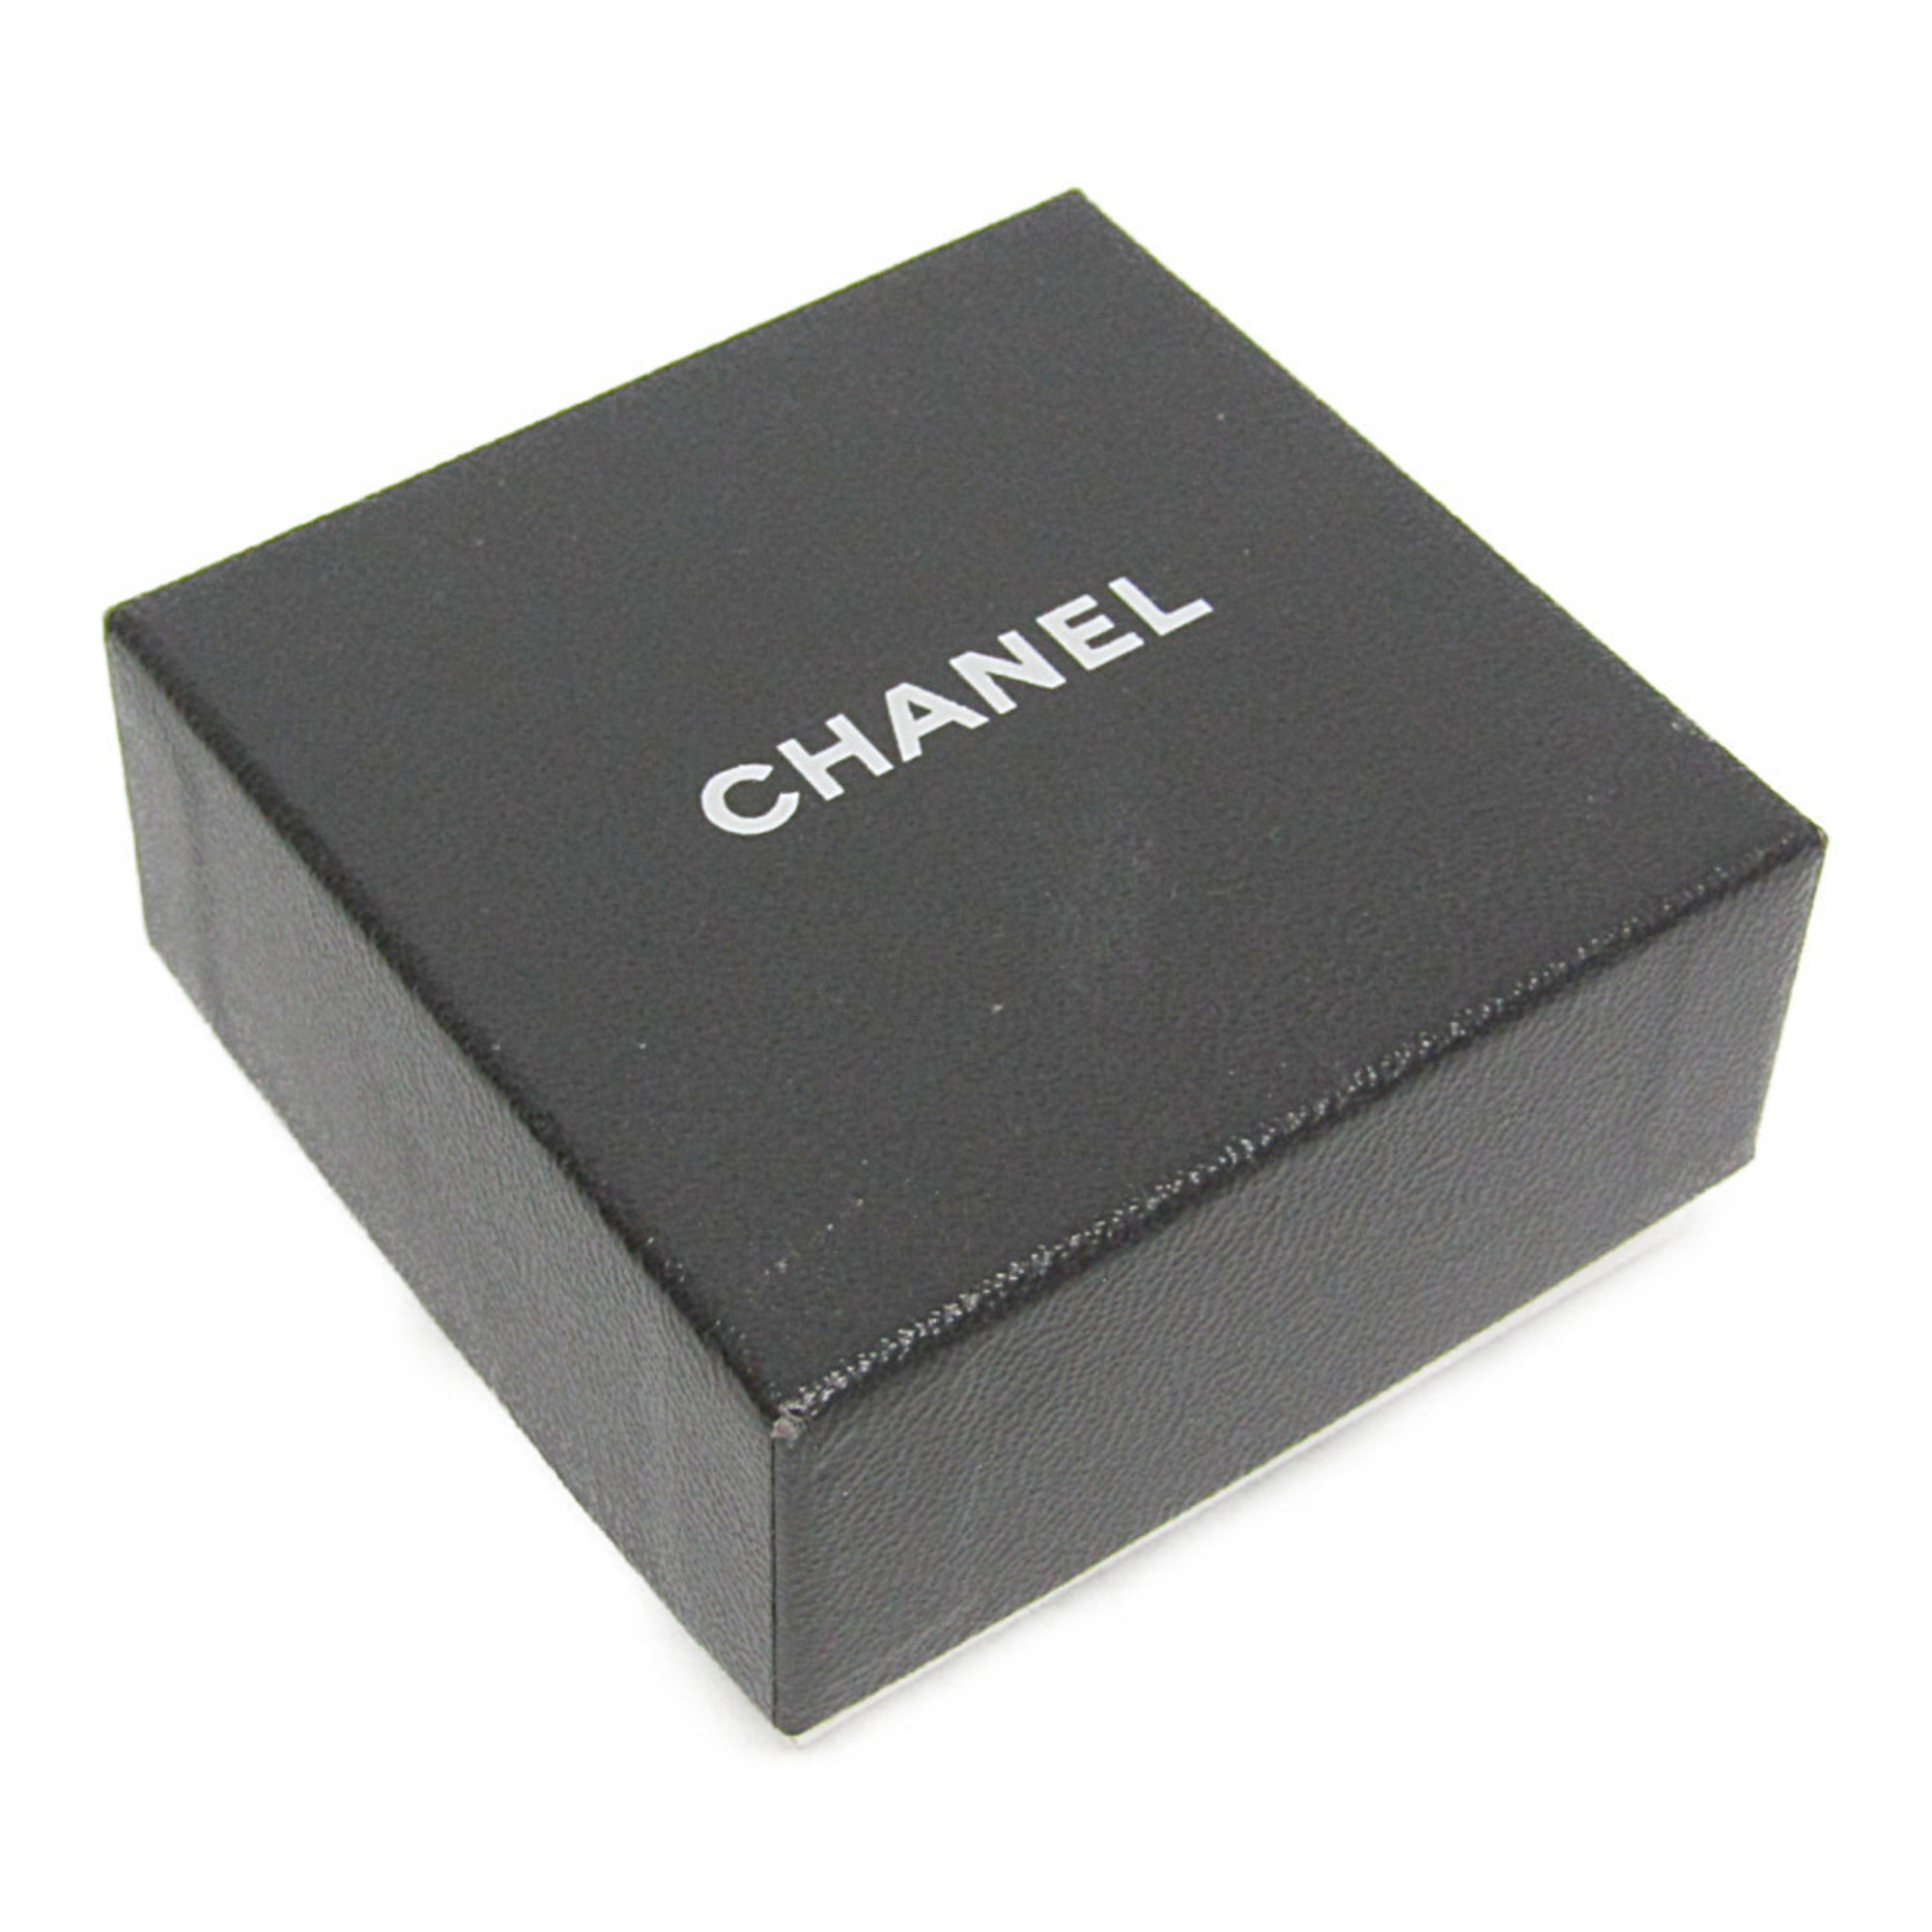 シャネル(Chanel) イミテーションパール イヤリング イミテーションパール メタル クリップイヤリング シルバー